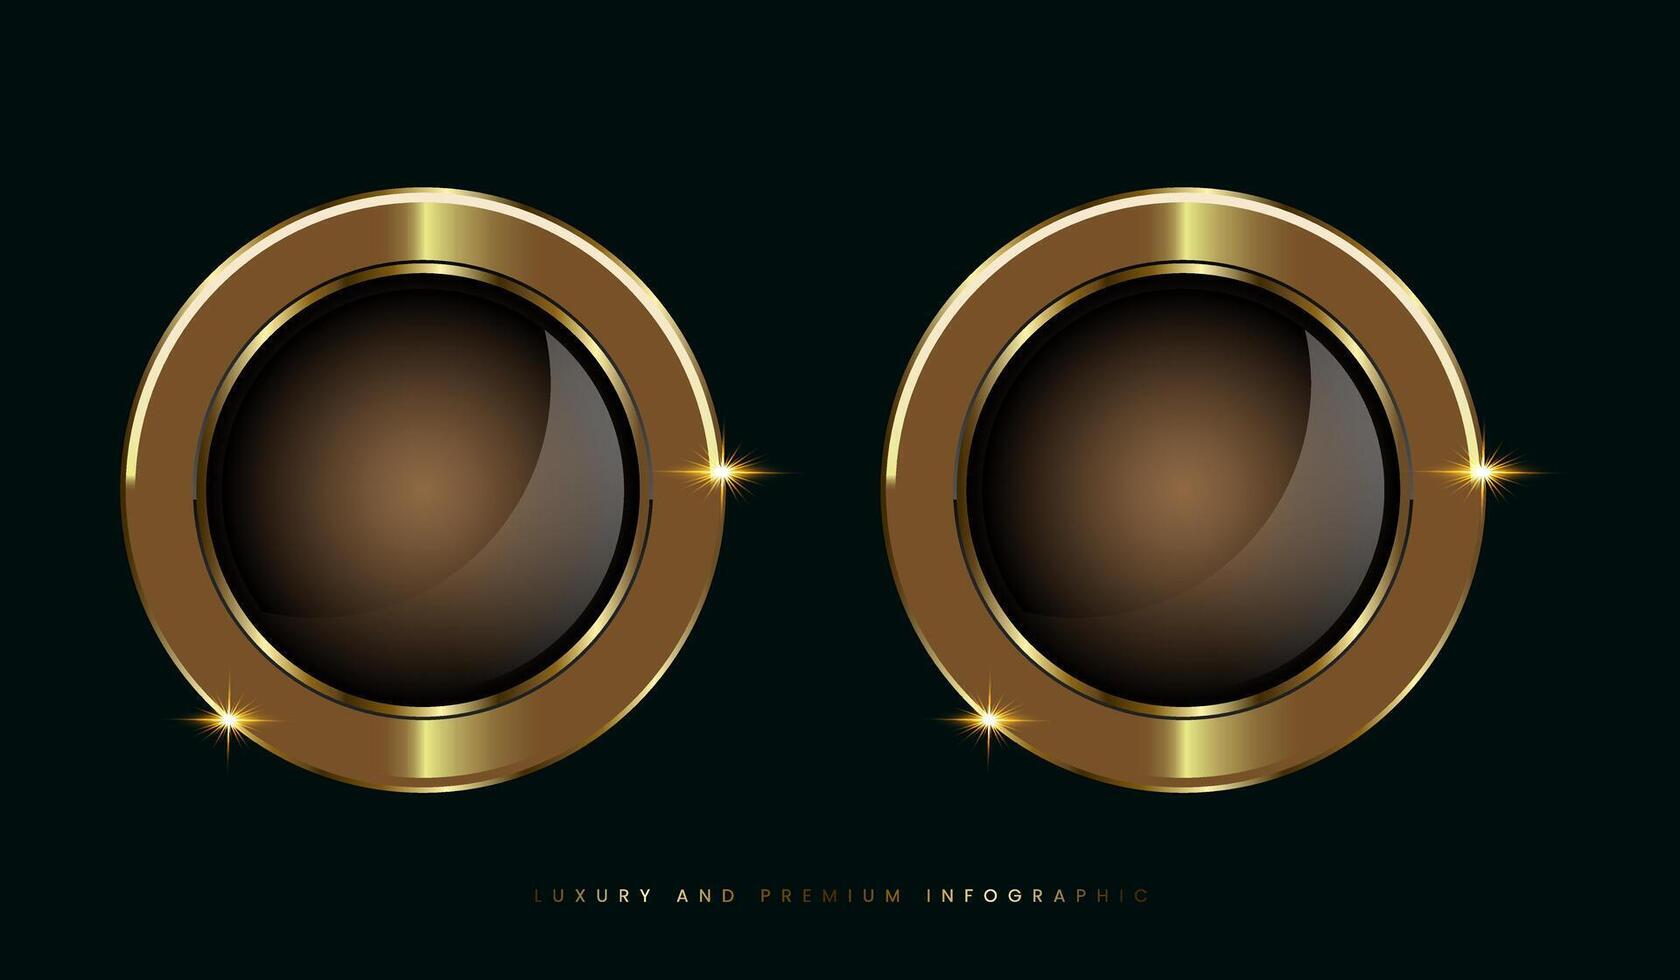 dos lujo y prima dorado insignias y etiqueta, oscuro prima botones, etiquetas parte superior calidad productos vector diseño